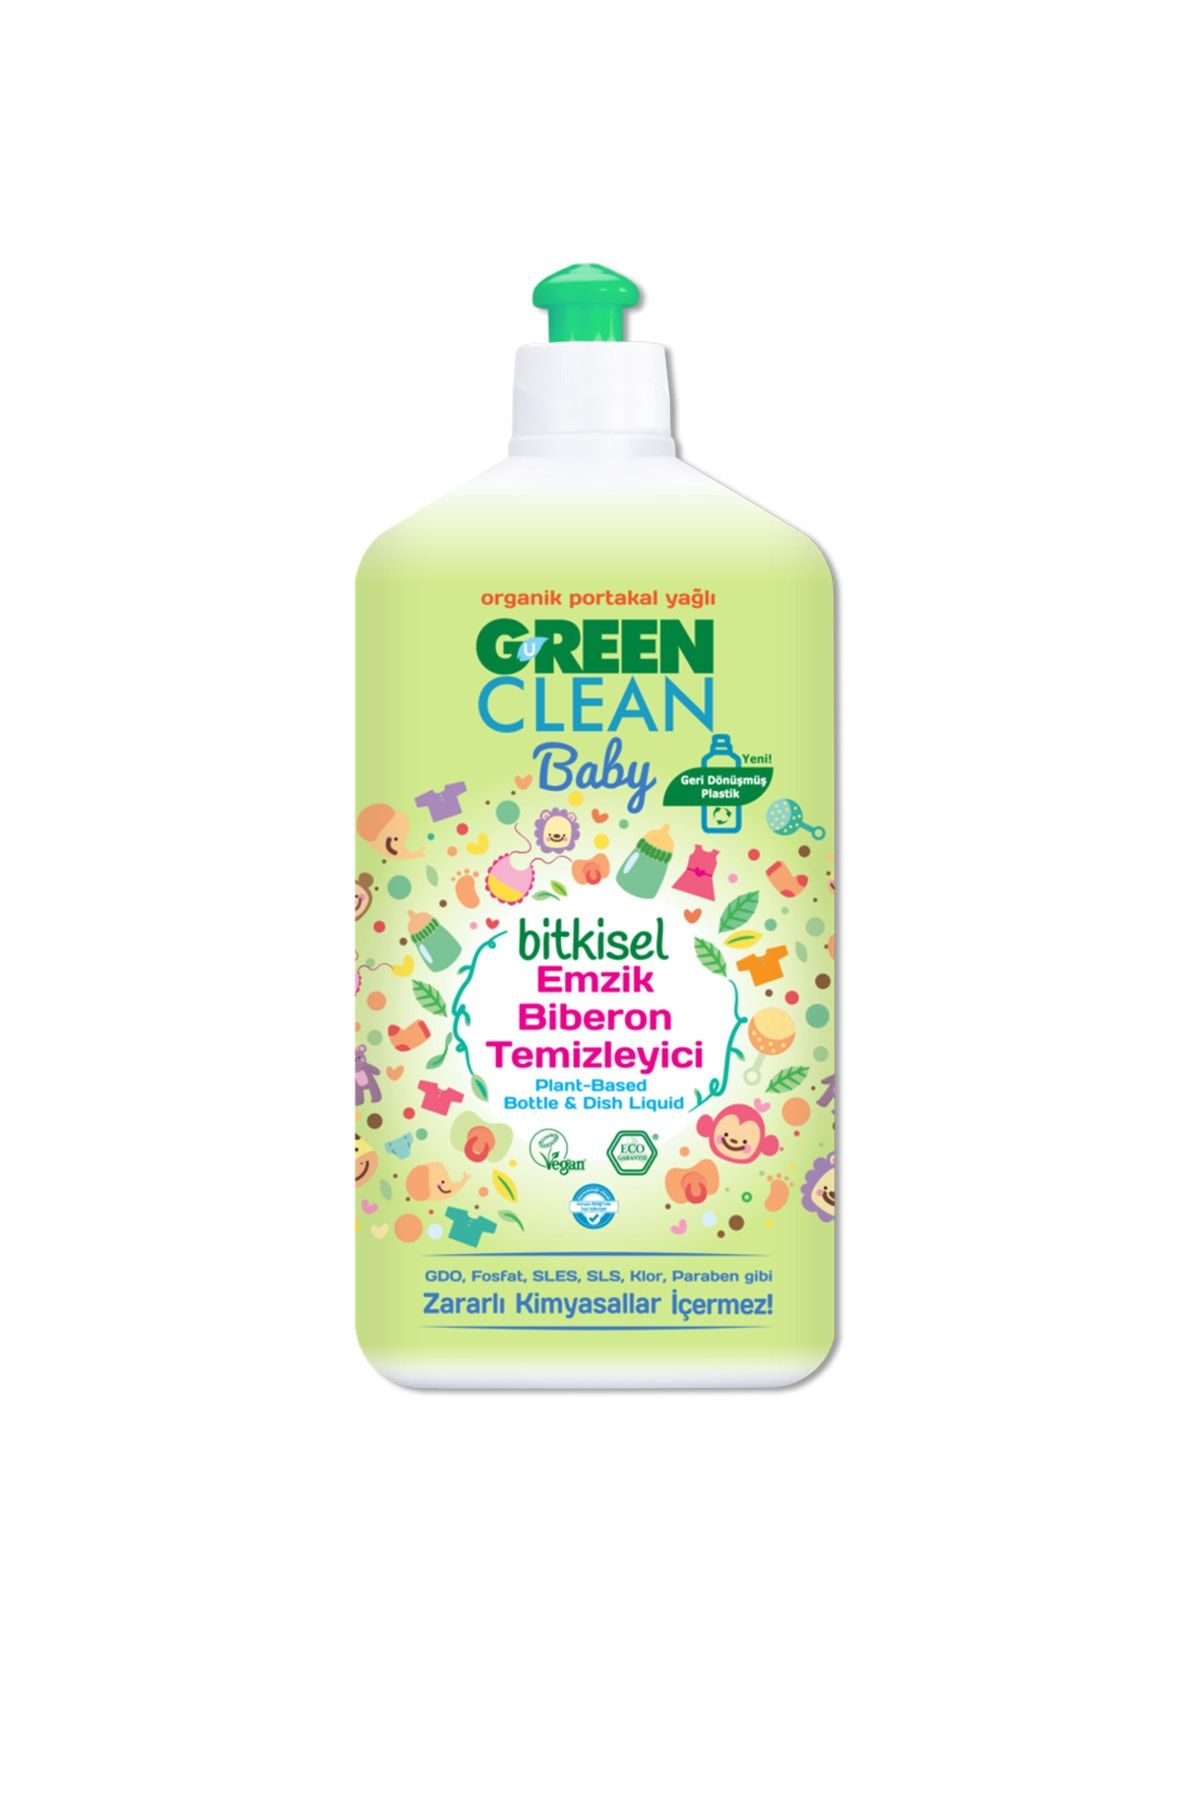 Green Clean Baby Organik Portakal Yağlı Bitkisel Emzik Biberon Temizleyici 500ml